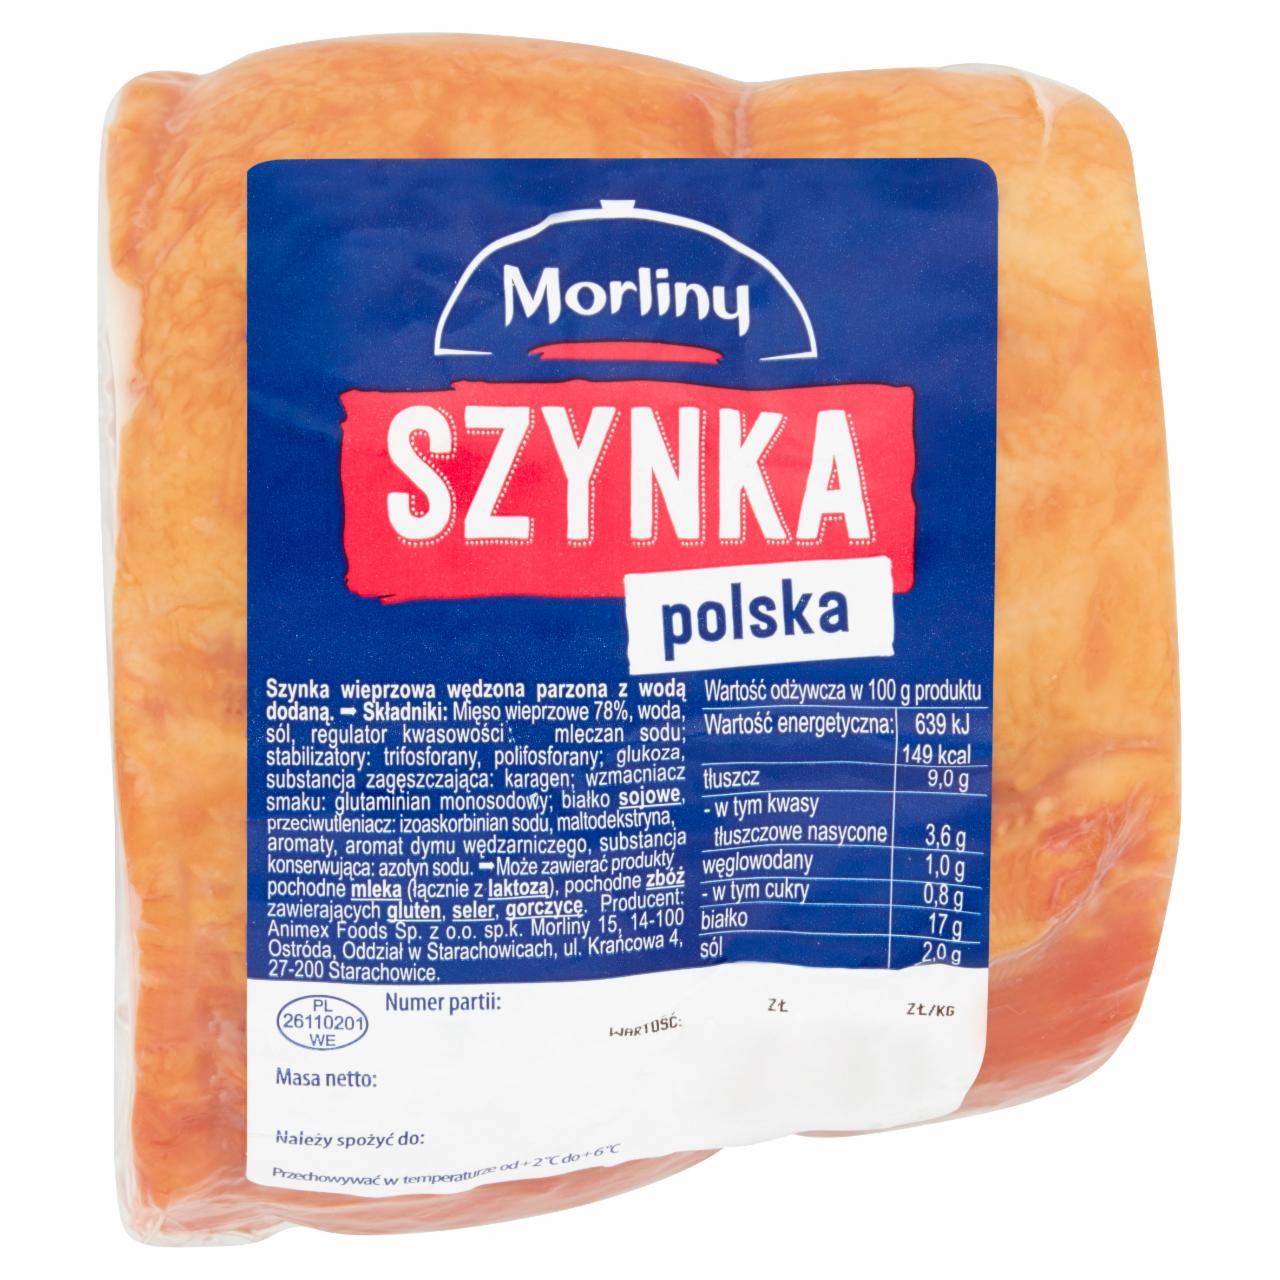 Zdjęcia - Morliny Szynka polska